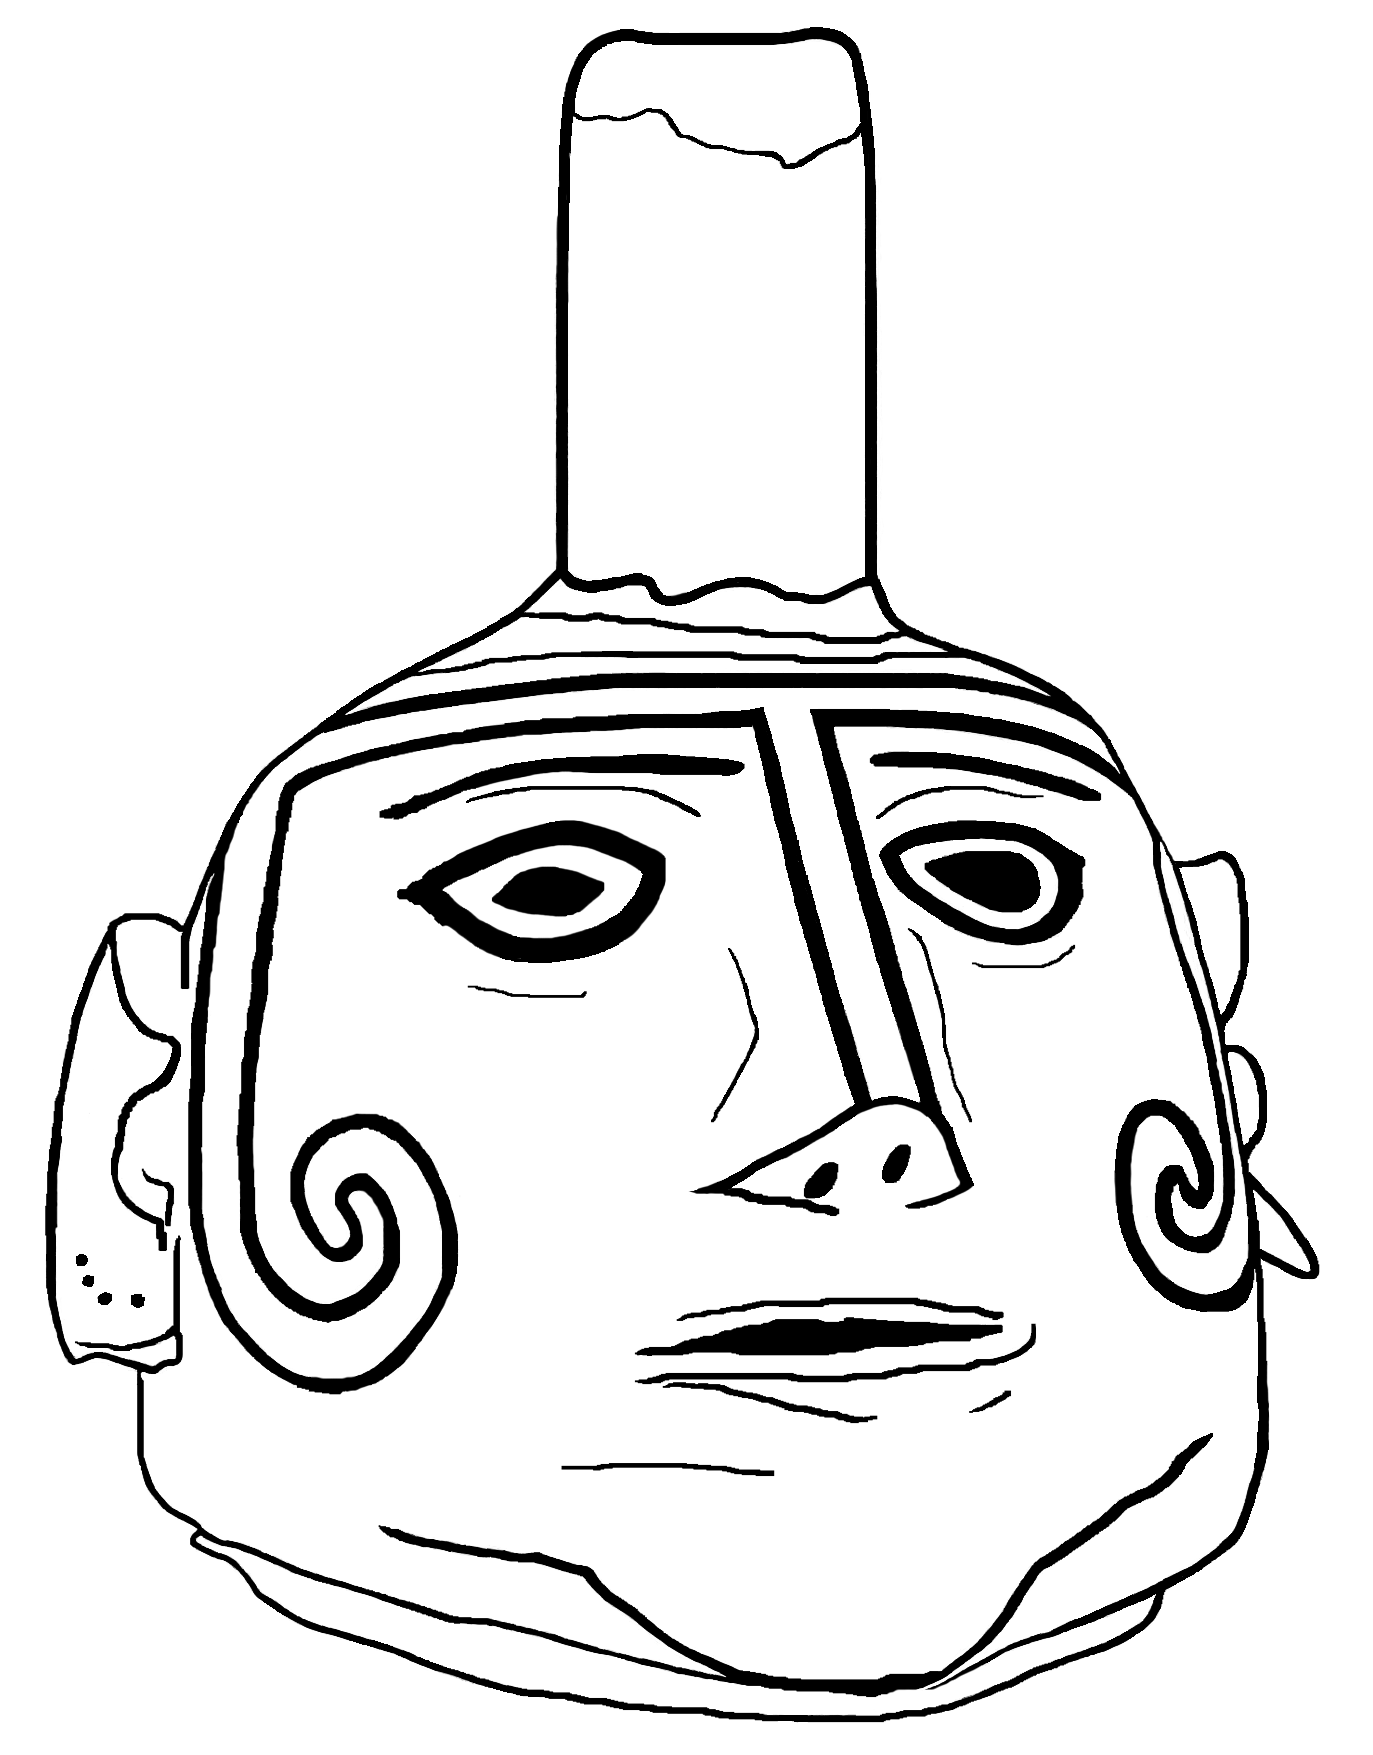 Coloring page: Casas Grandes human-head pot